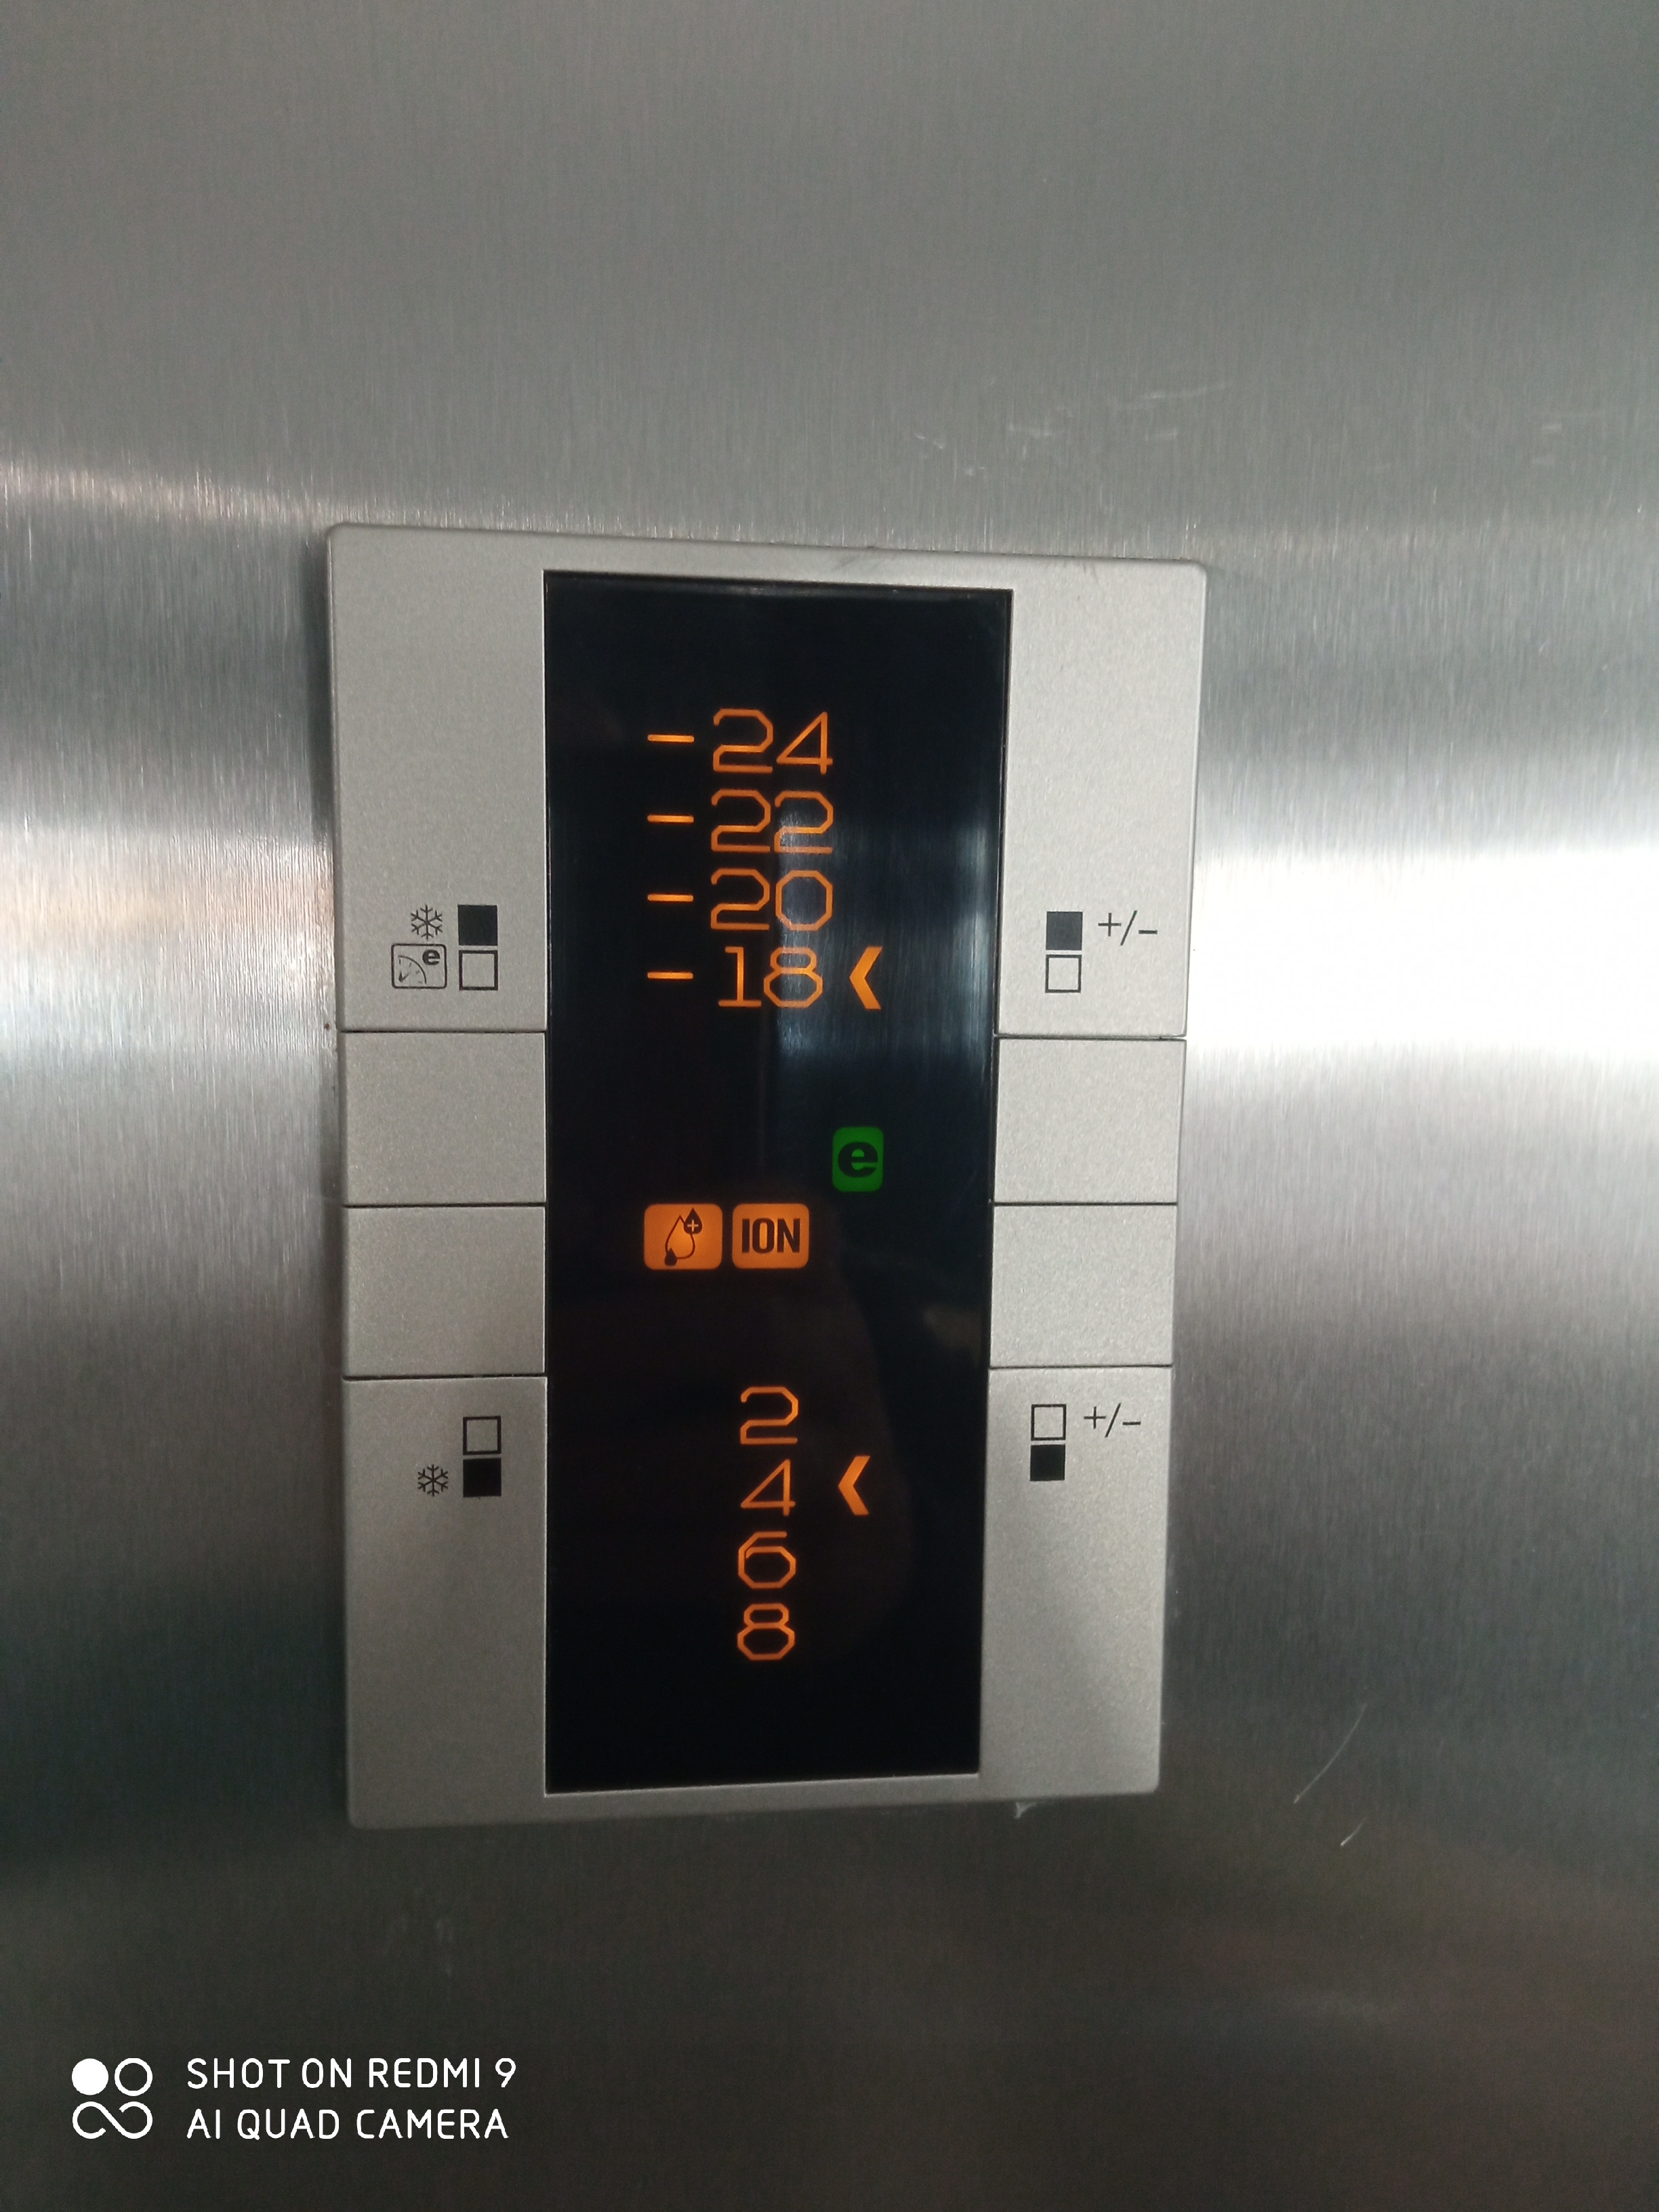 Wie stelle ich die Kühlschranktemperatur ein?